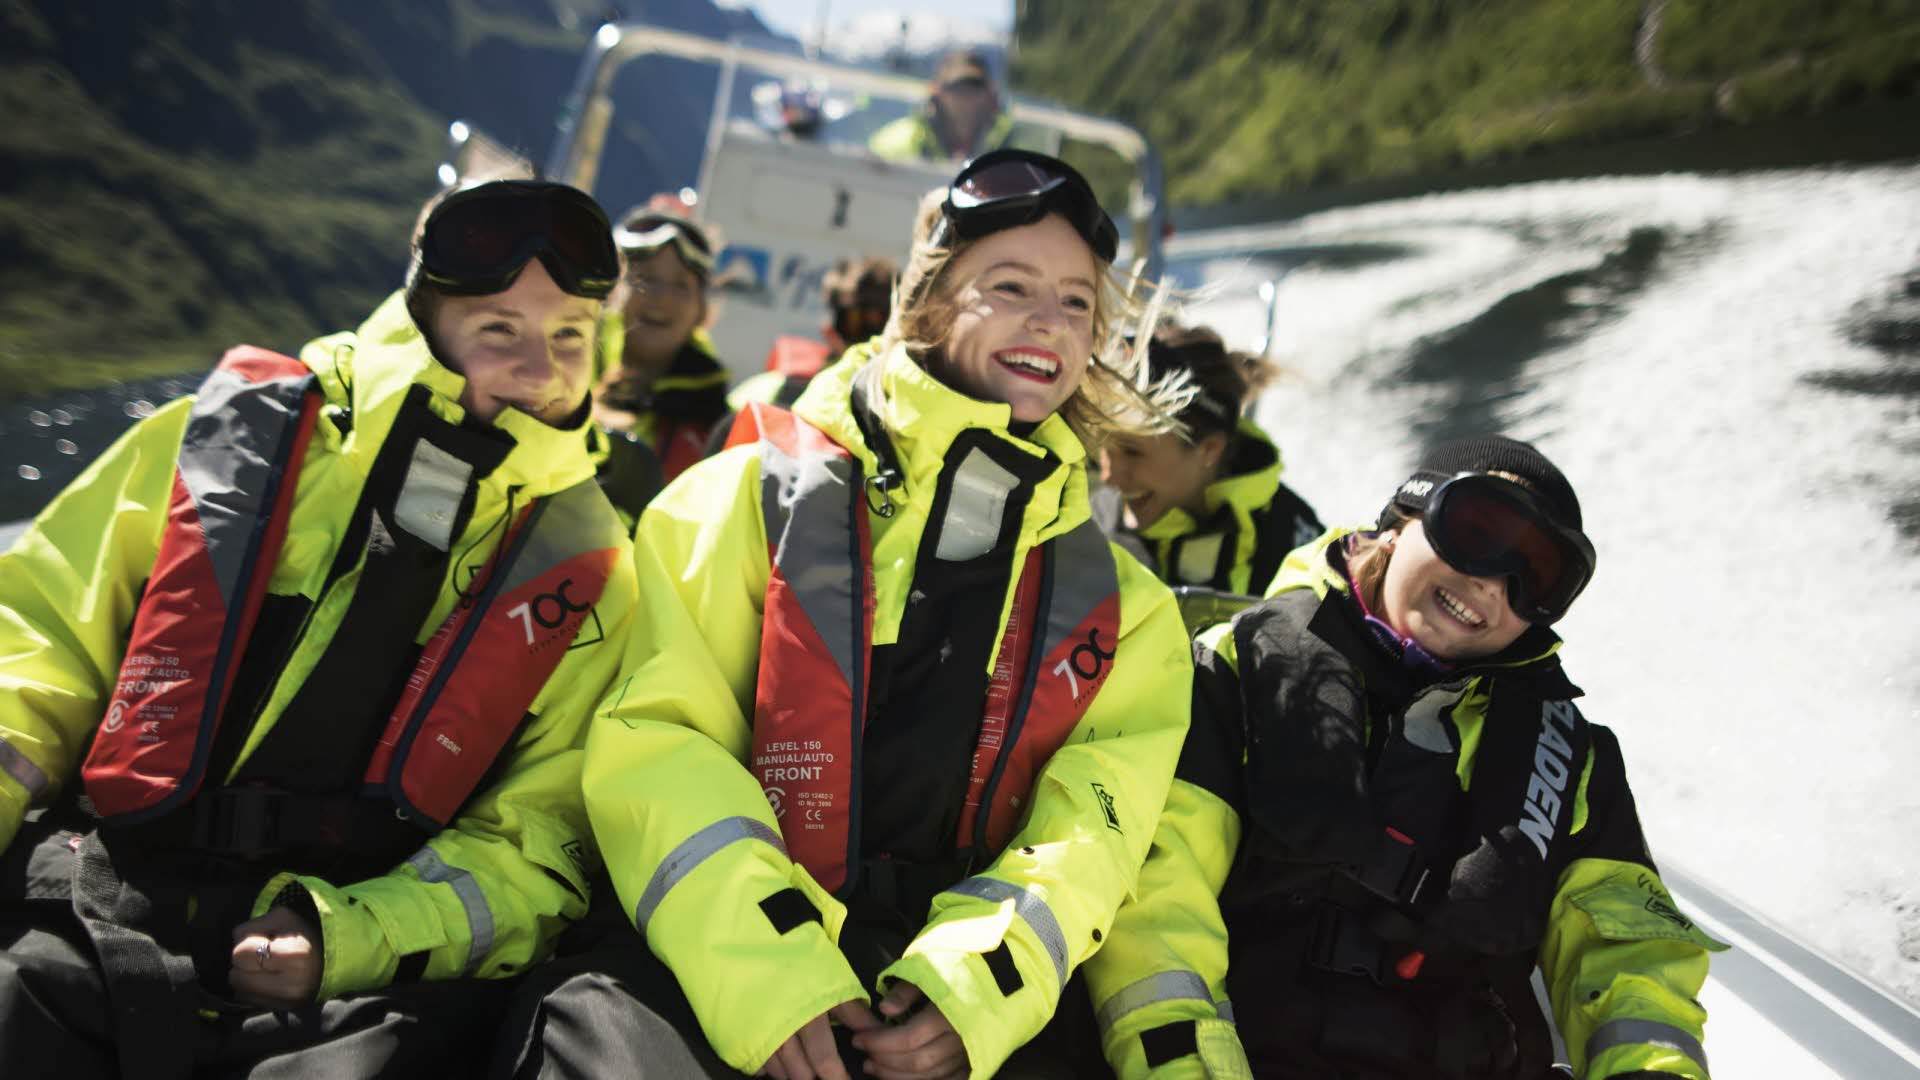 ネーロイフィヨルド(Naroyfjord)を全速力で航行するリブボートにウエットスーツに身を包んで座っている笑顔の3人